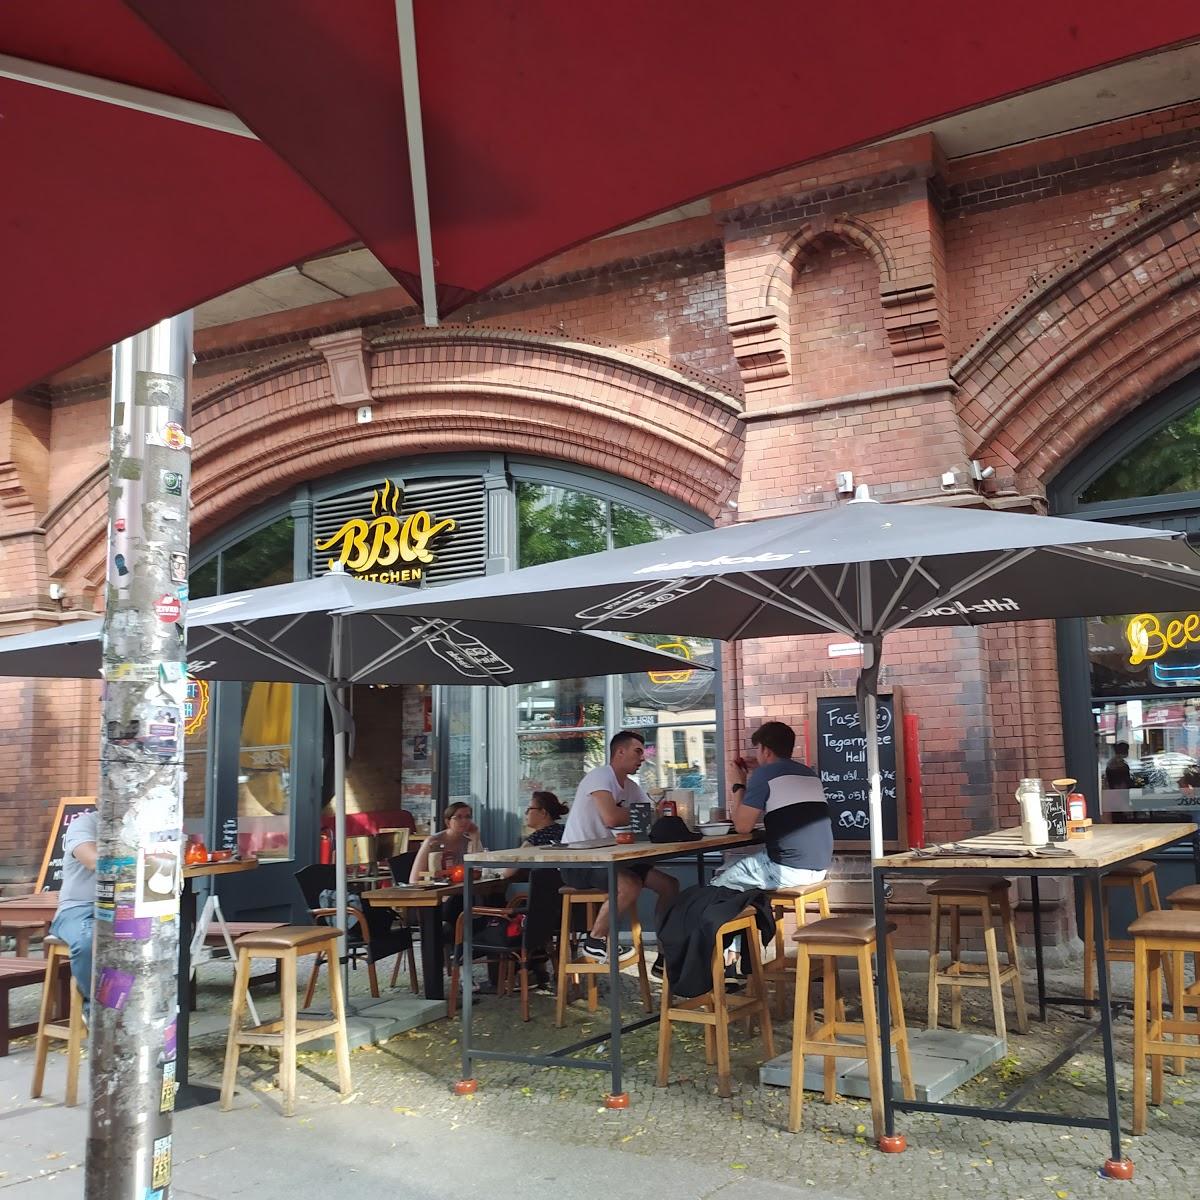 Restaurant "BBQ Kitchen" in Berlin